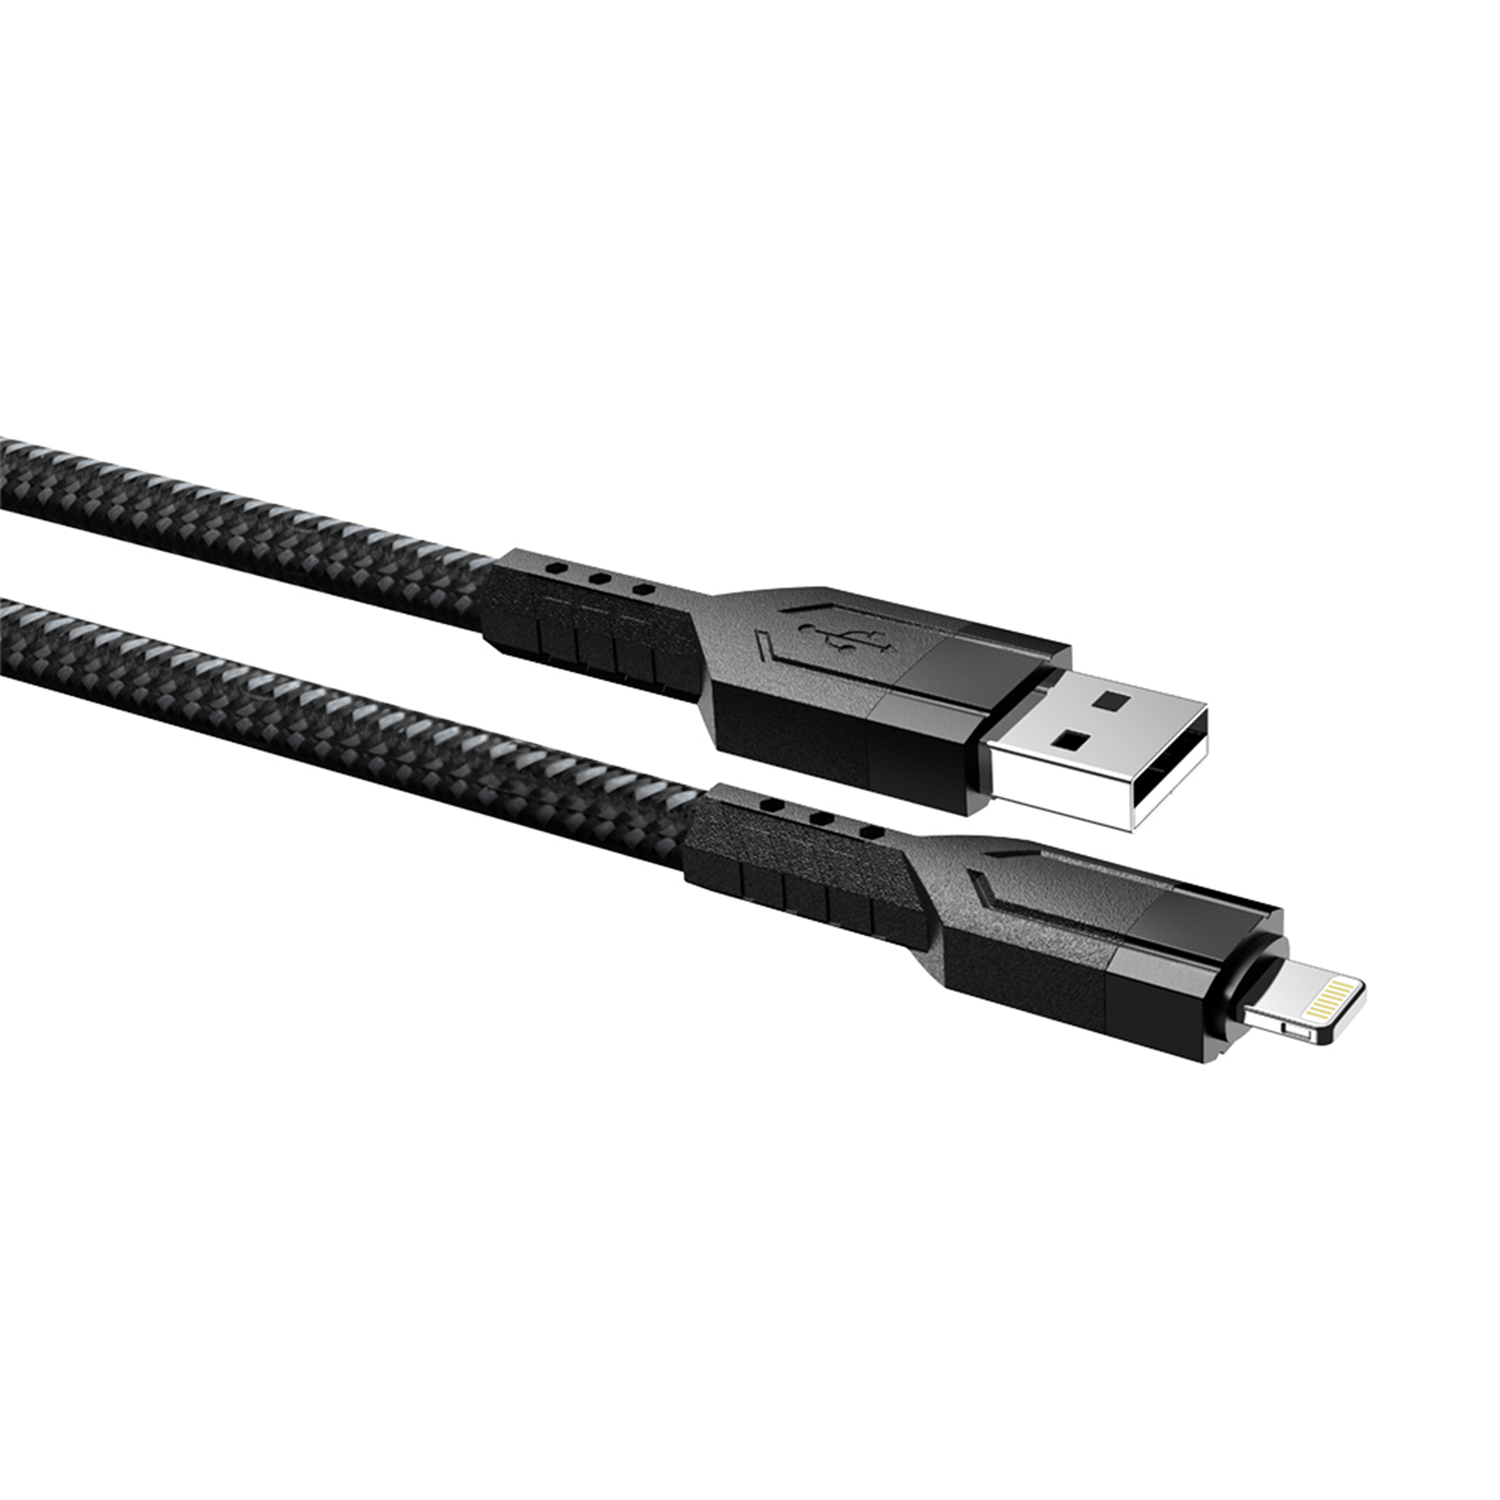 DC196 USB-I5 Portable Sync Cable aido tech EZRA